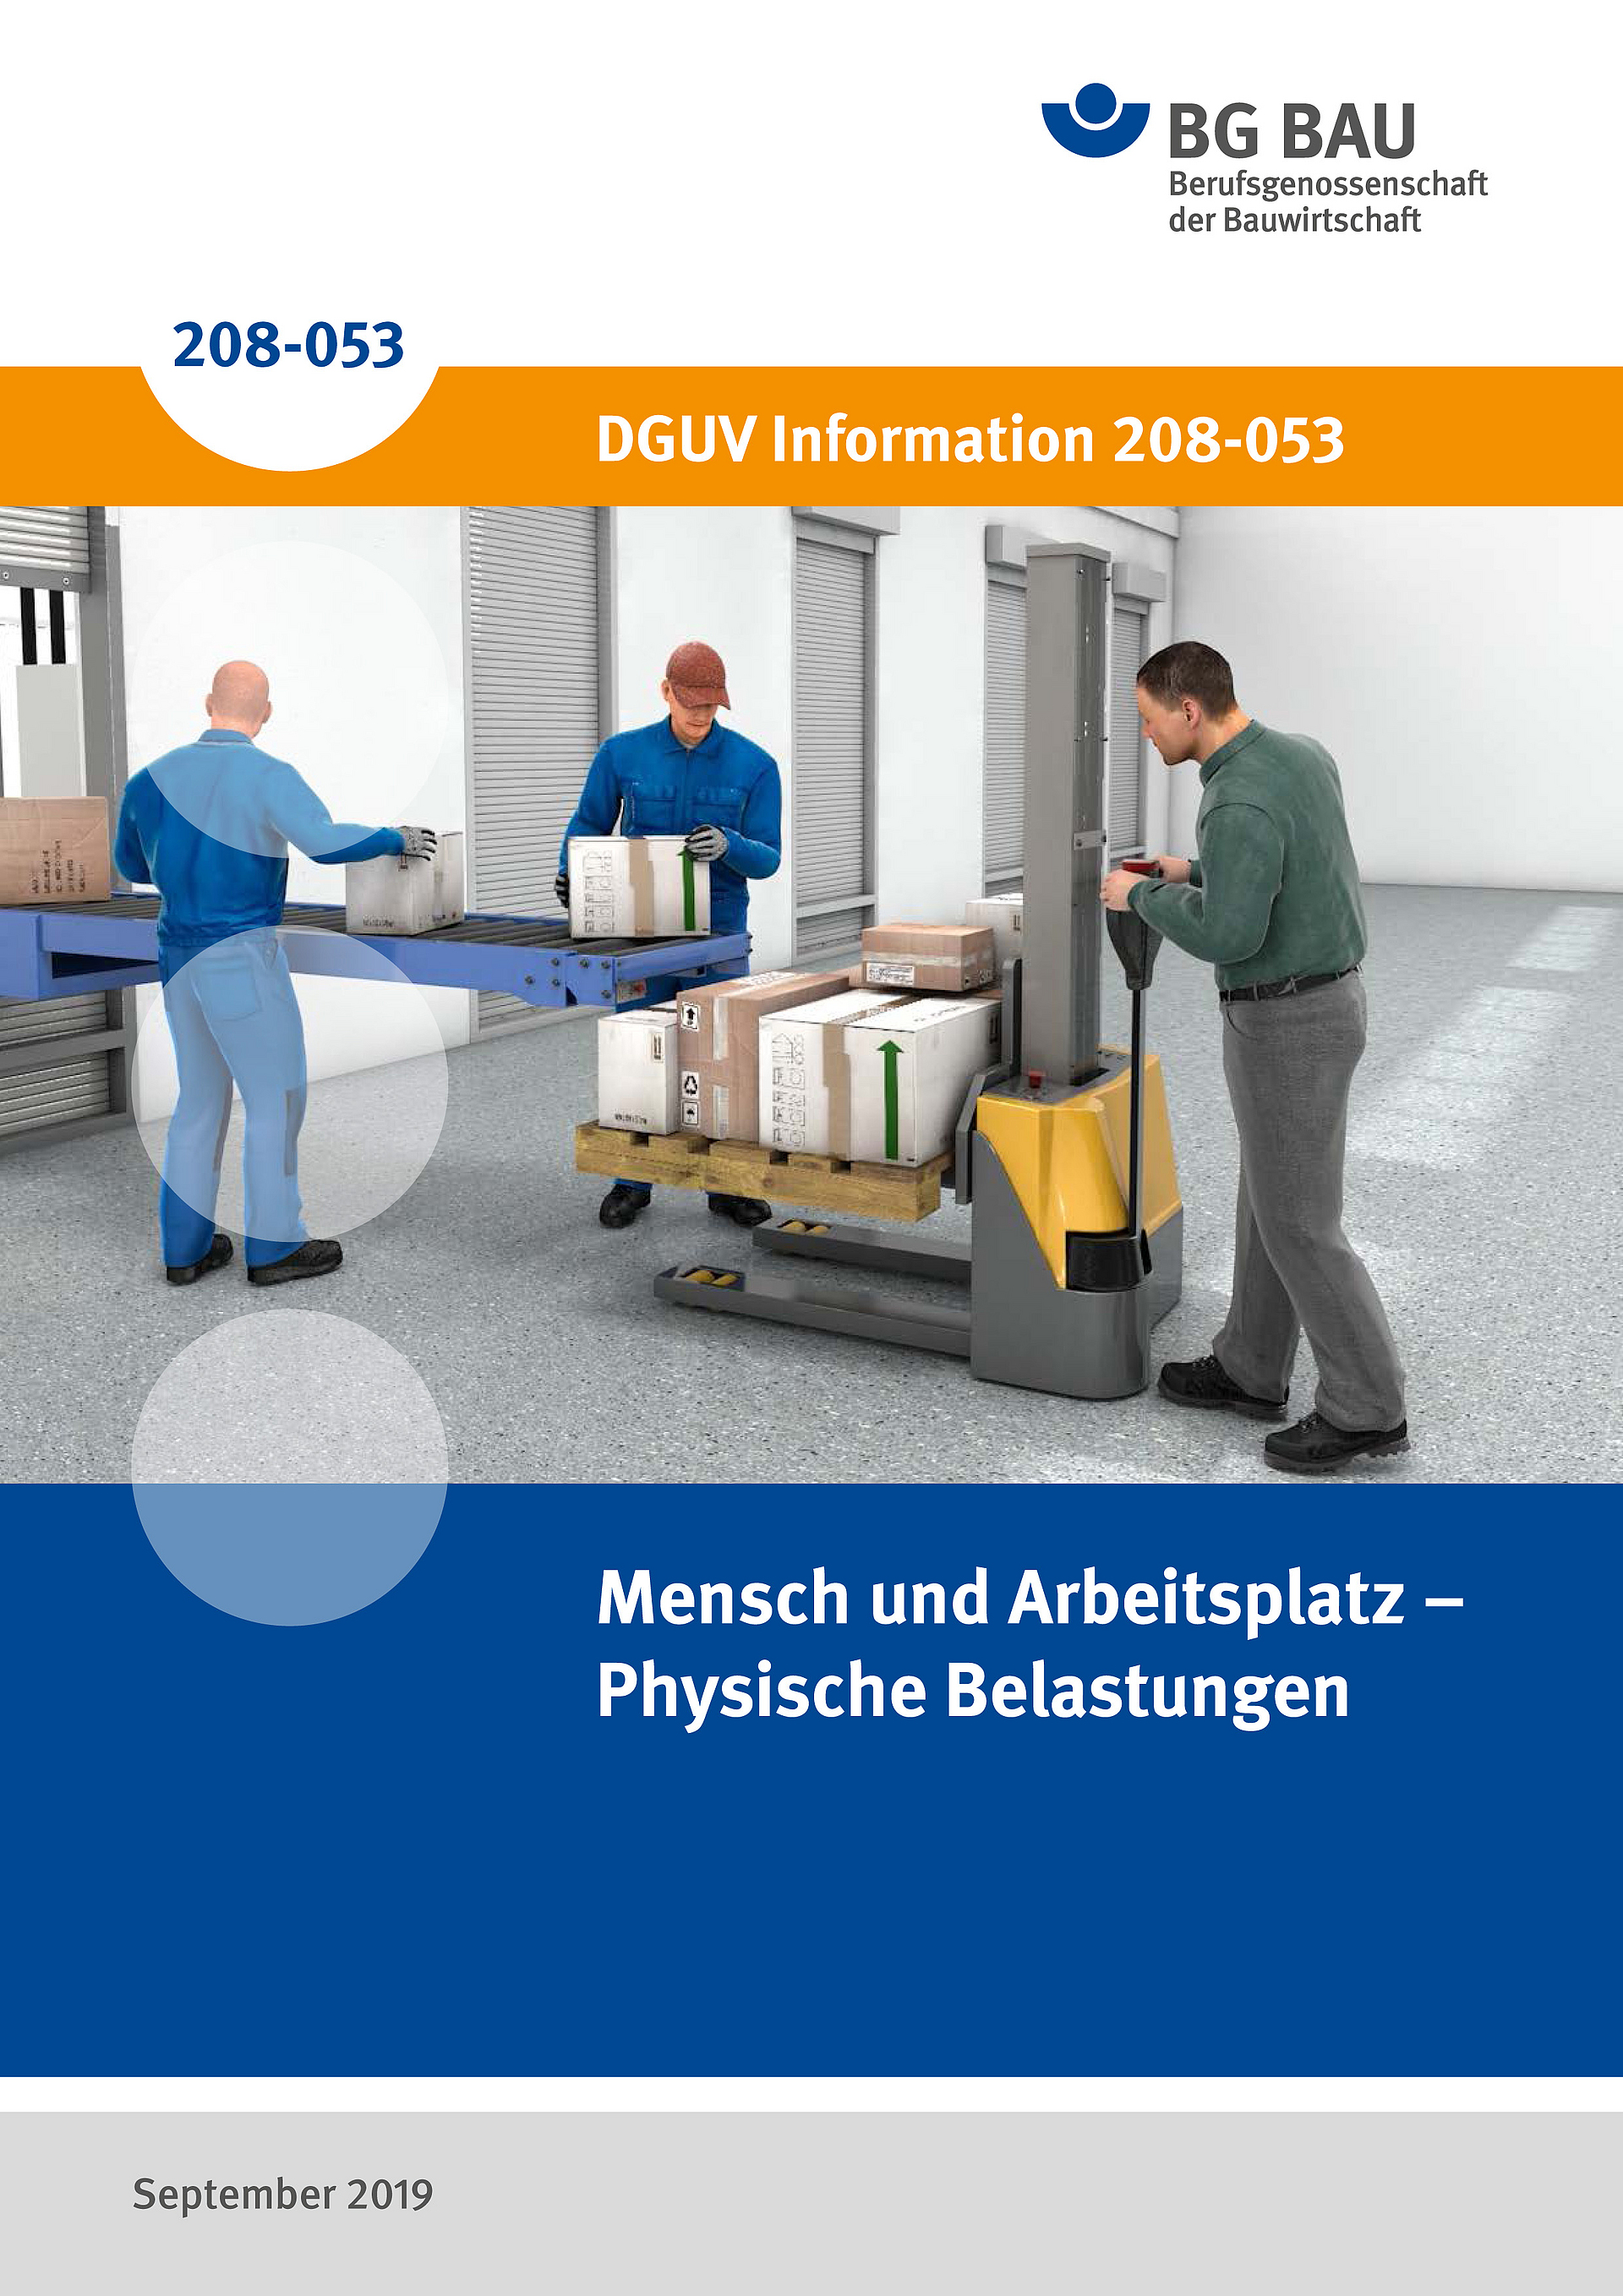 Titelbild der DGUV Information 208-053: Mensch und Arbeitsplatz - Physische Belastungen